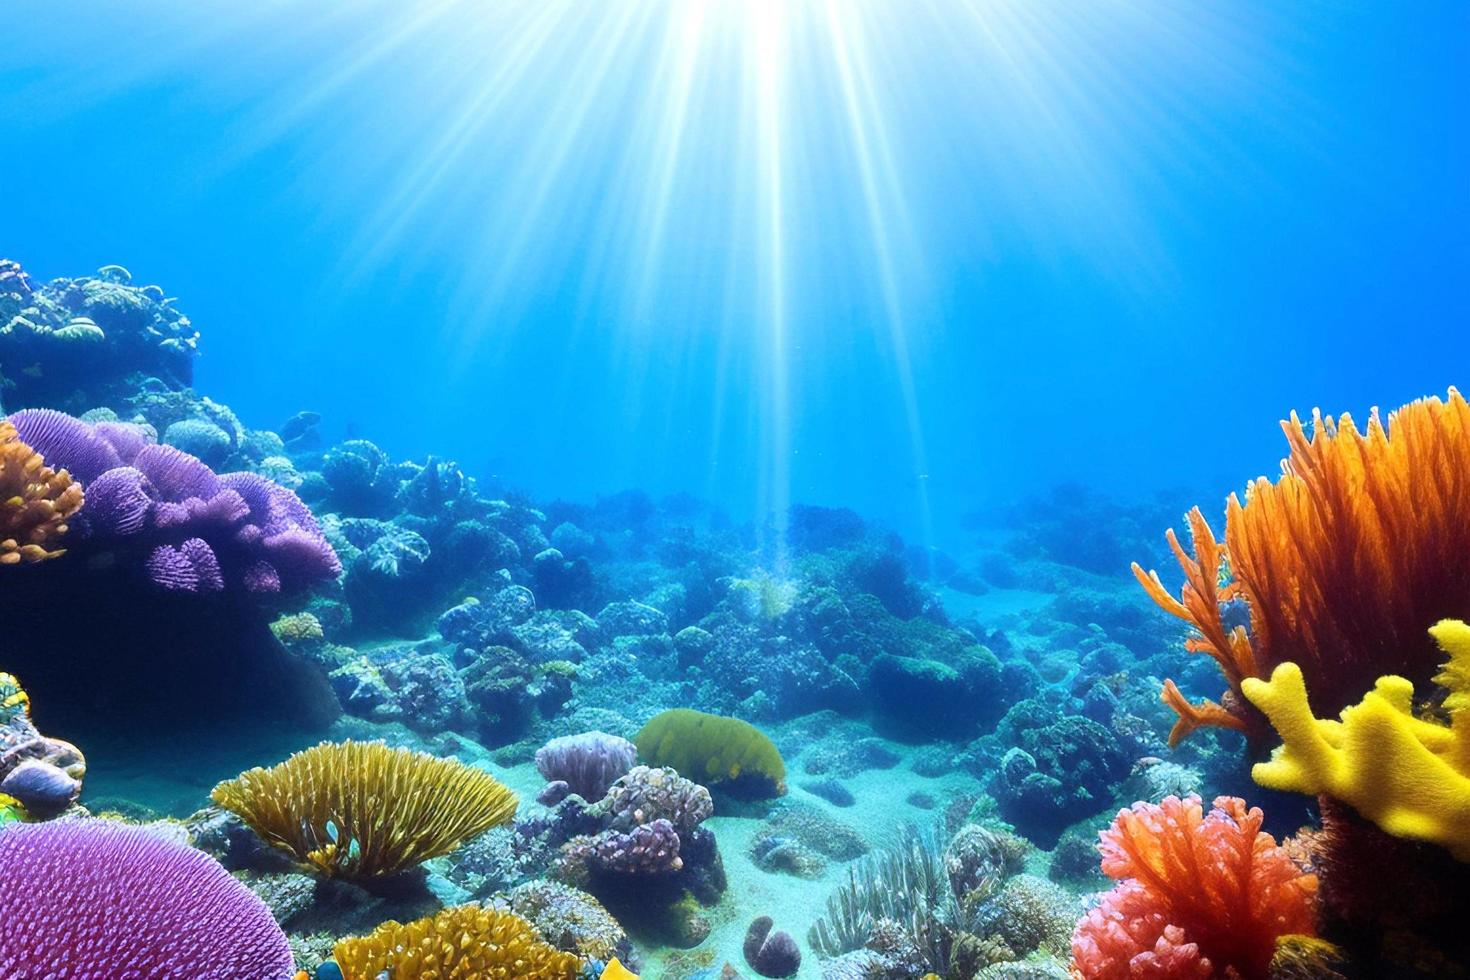 escena submarina. arrecife de coral del océano bajo el agua. mundo marino bajo el fondo del agua. foto